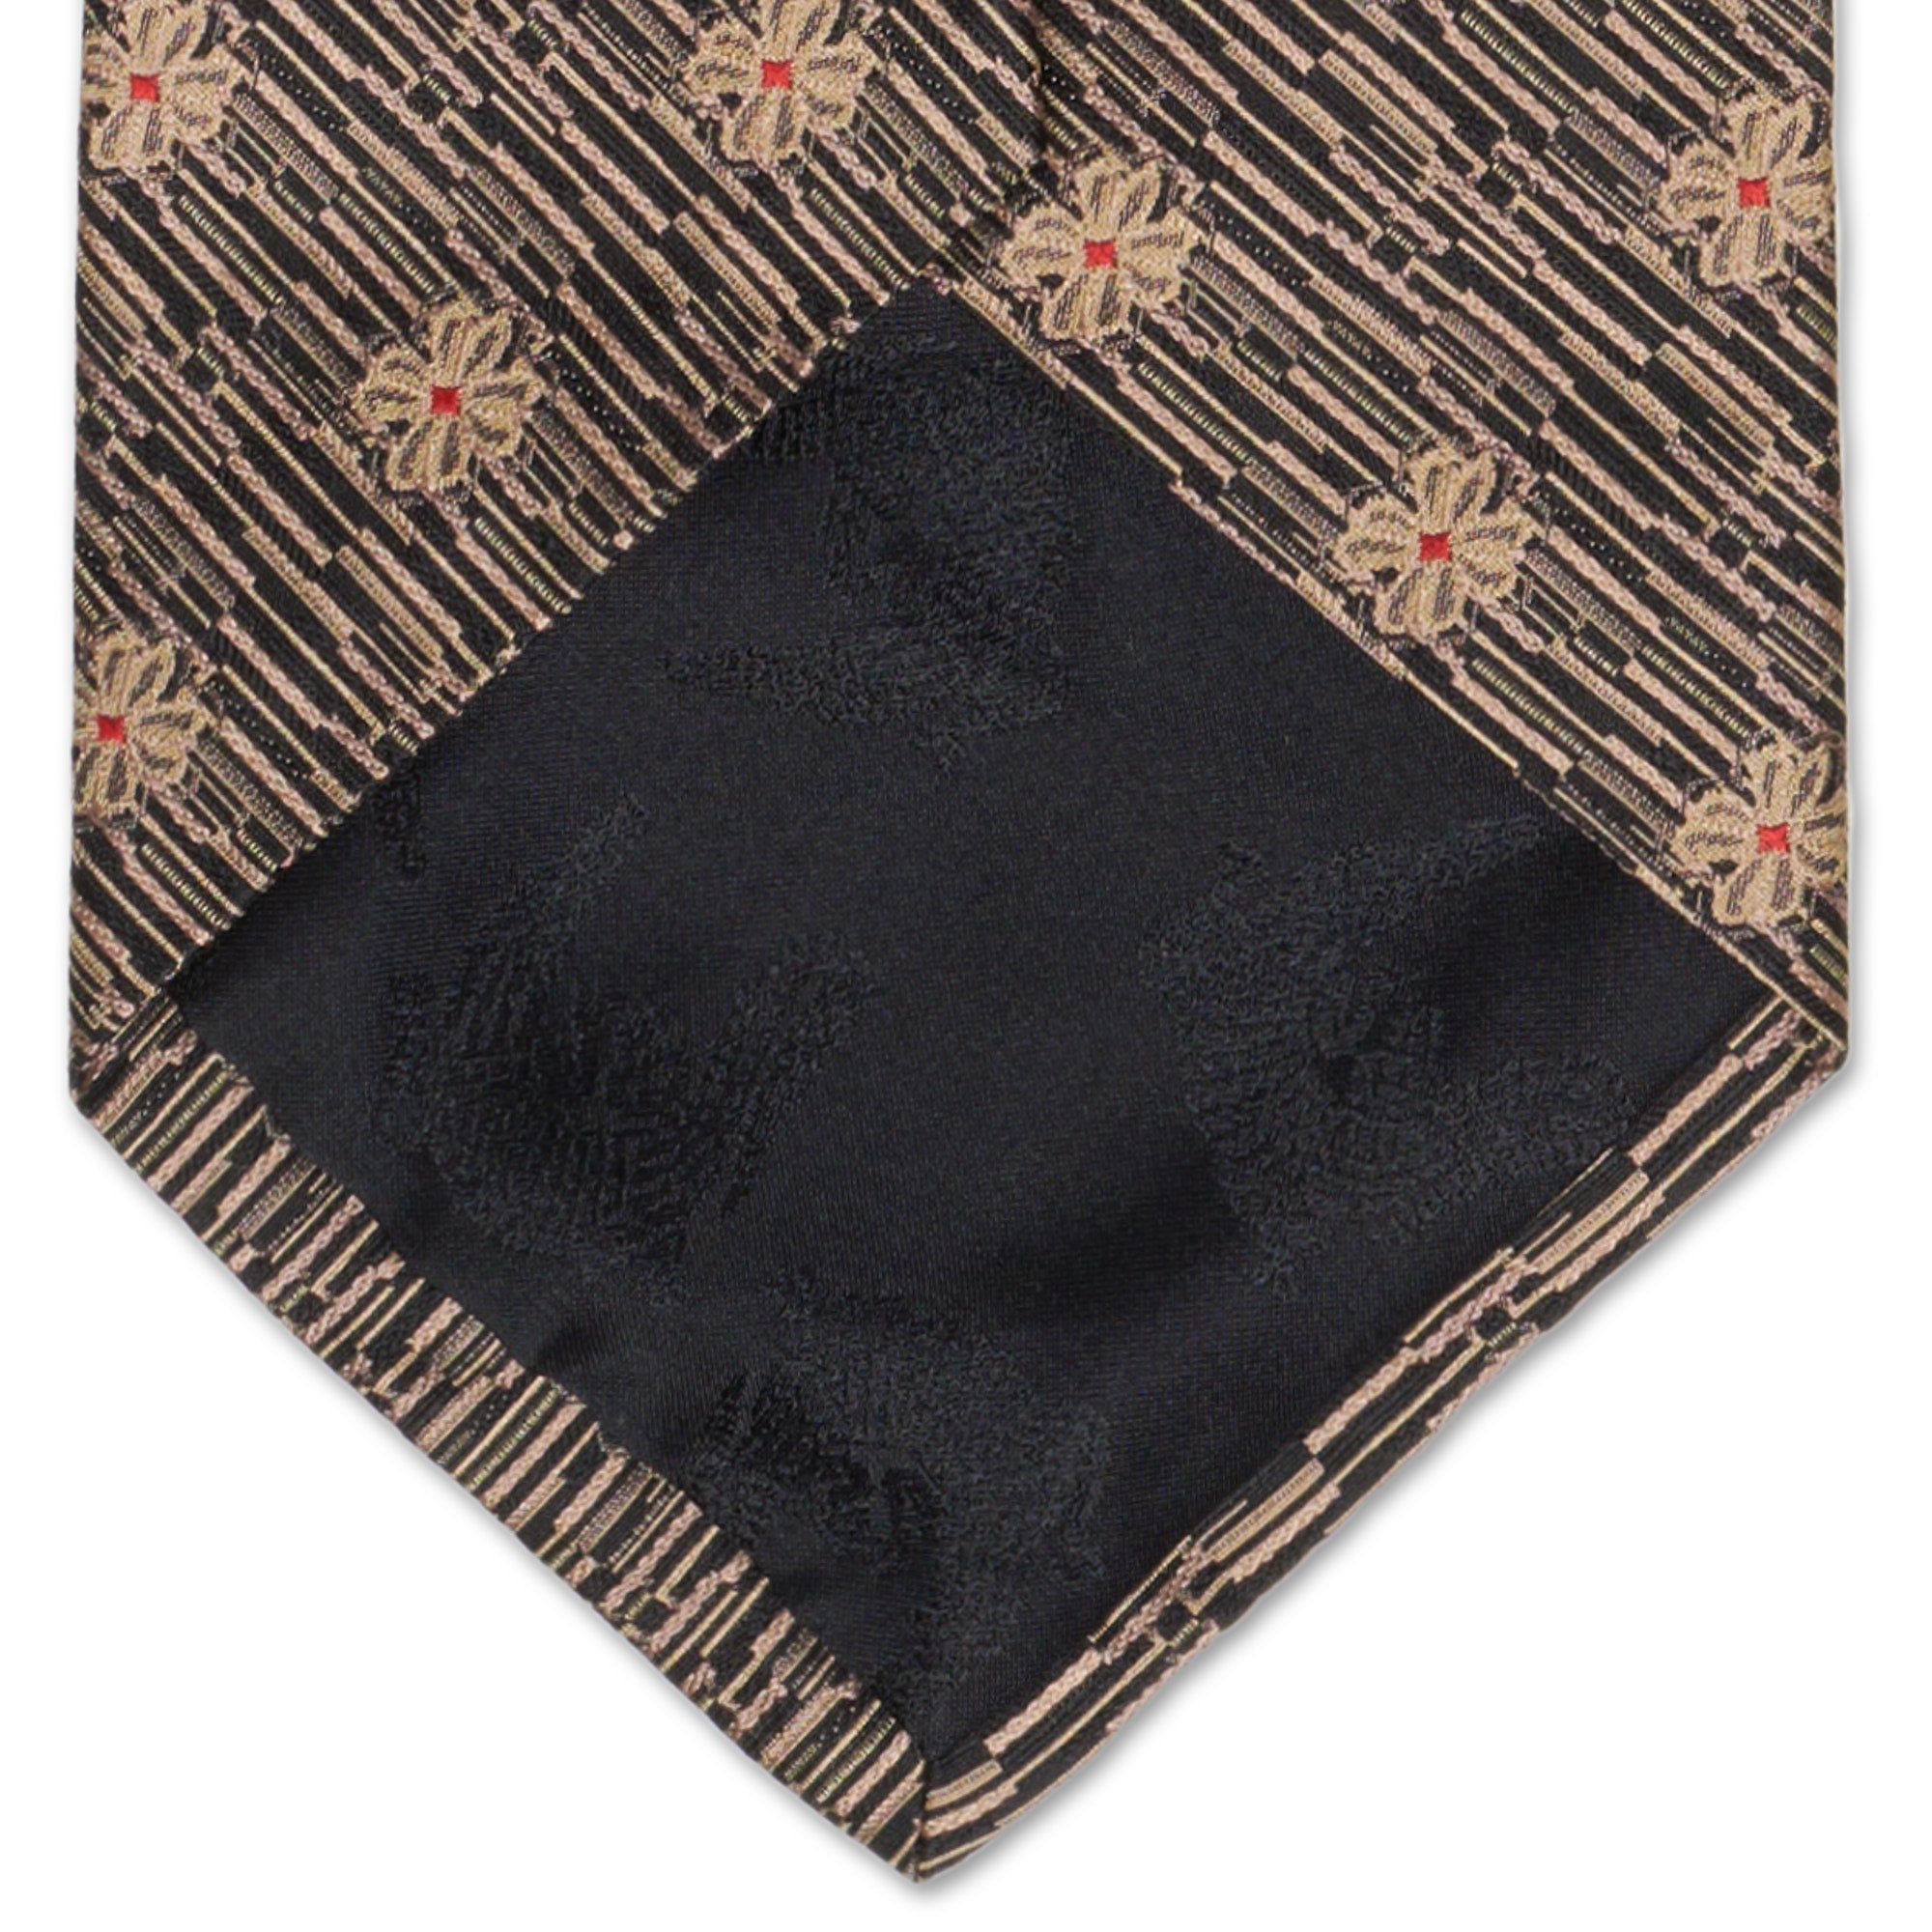 KIESELSTEIN-CORD Handmade Black Floral Design Silk Tie KIESELSTEIN-CORD